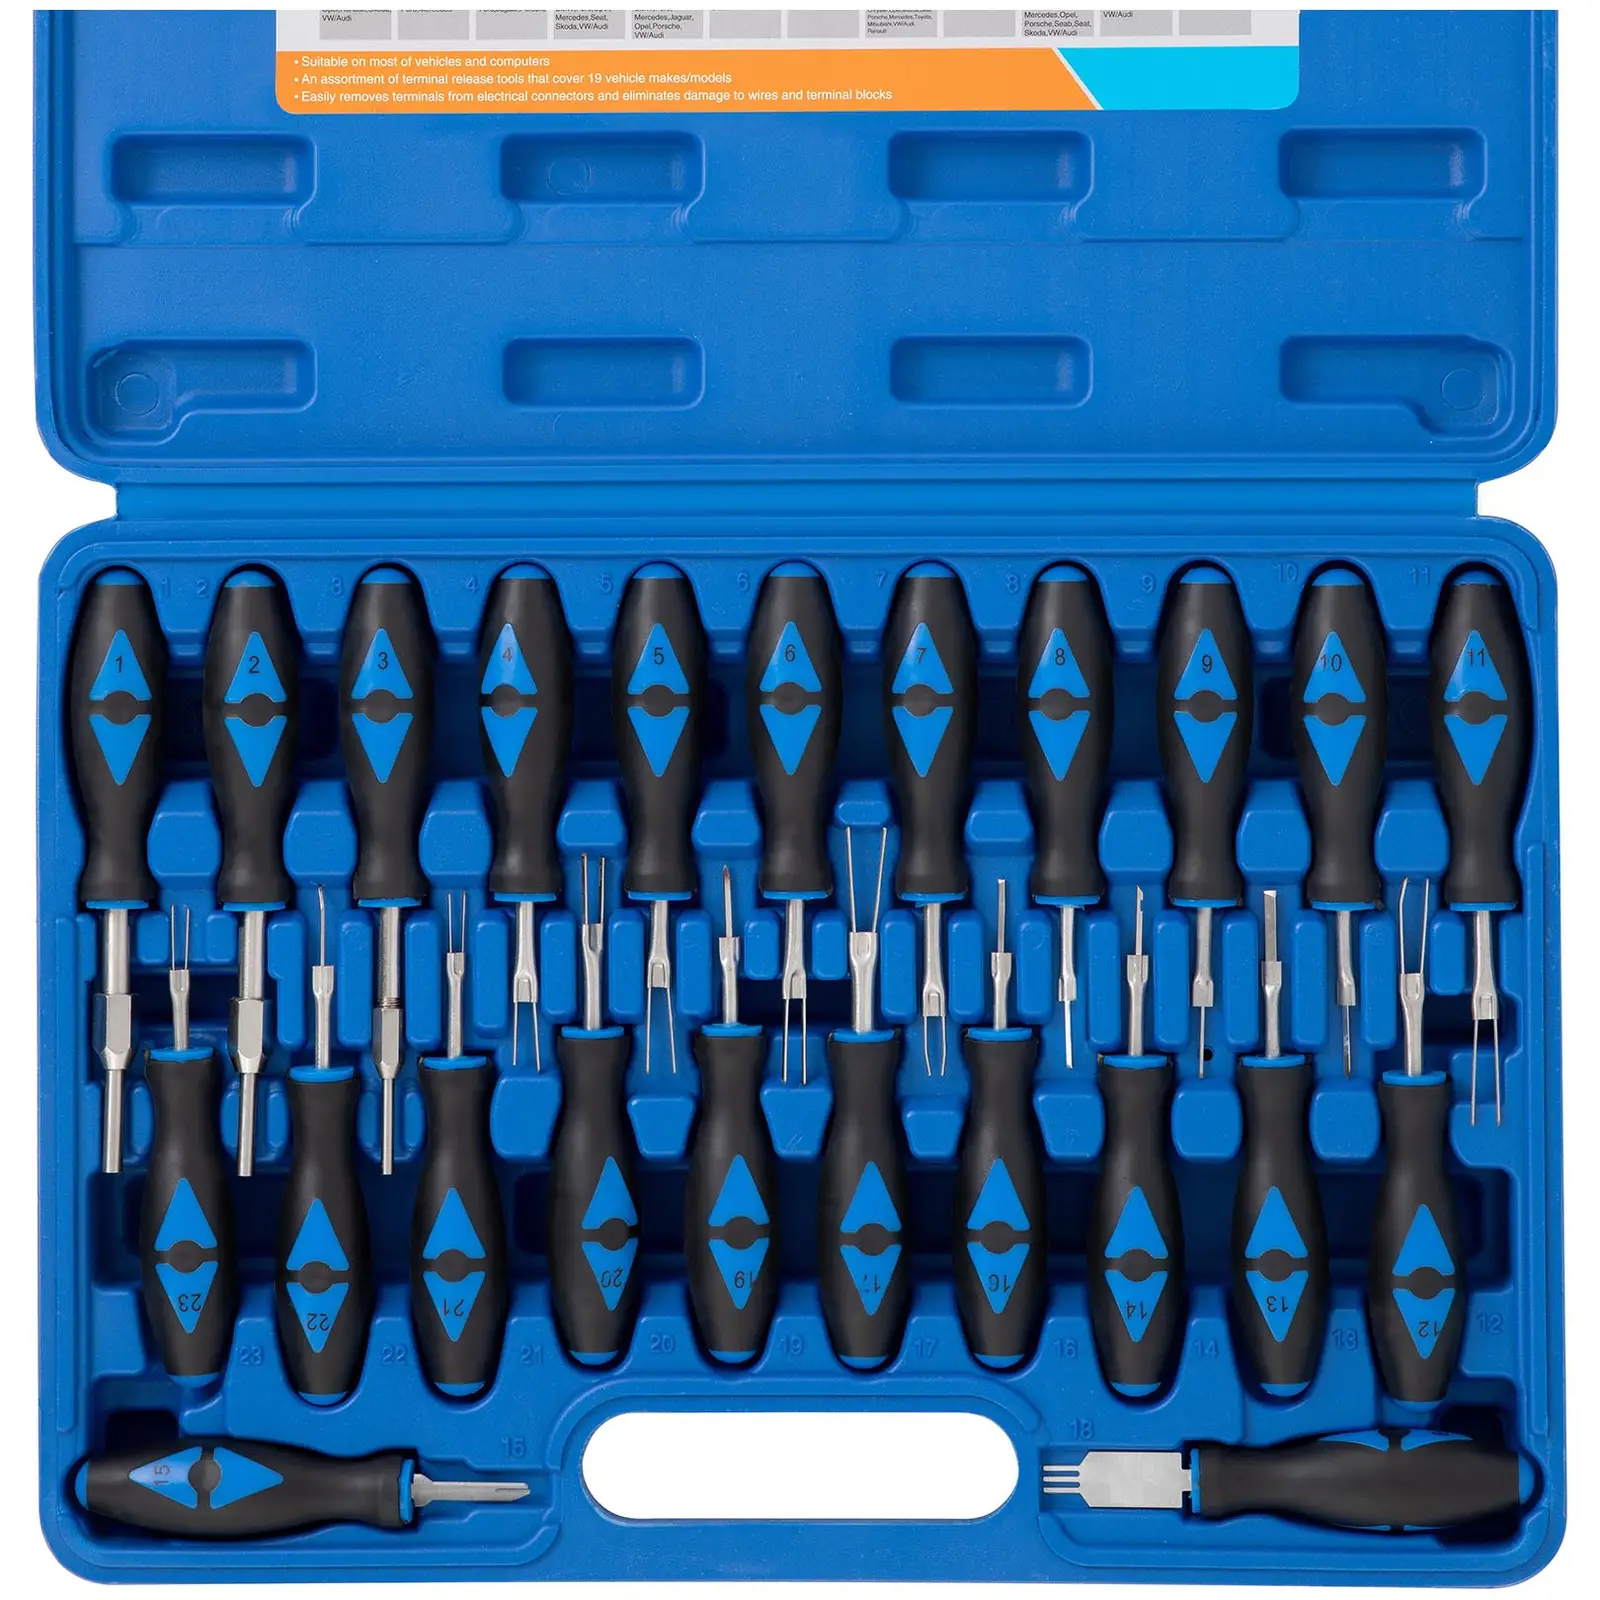 Kit de ferramentas de remoção de terminais - 23 pcs. - Núcleo: polipropileno, cabo: borracha (TPR) / aço inoxidável